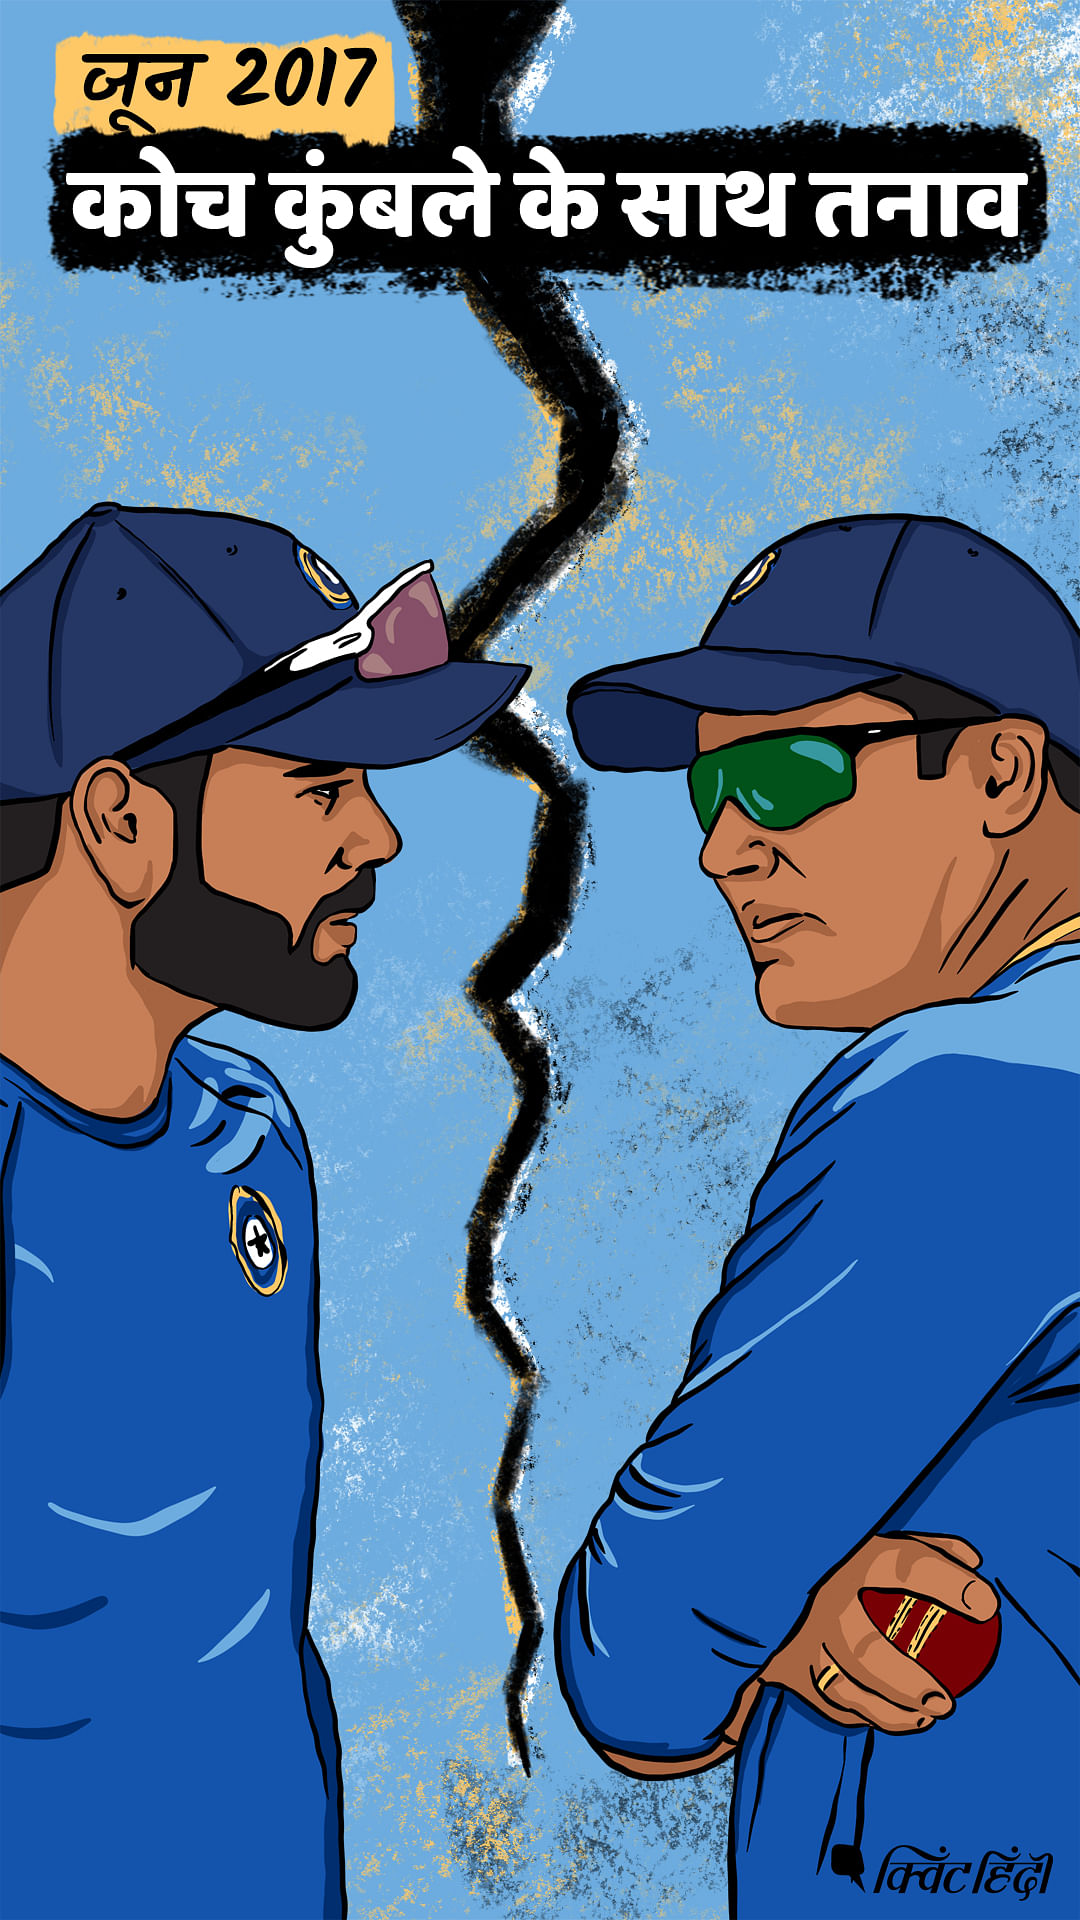 क्रिकेट जगत के सबसे बड़े स्टार विराट कोहली की कहानी ग्राफिक नॉवेल की जुबानी